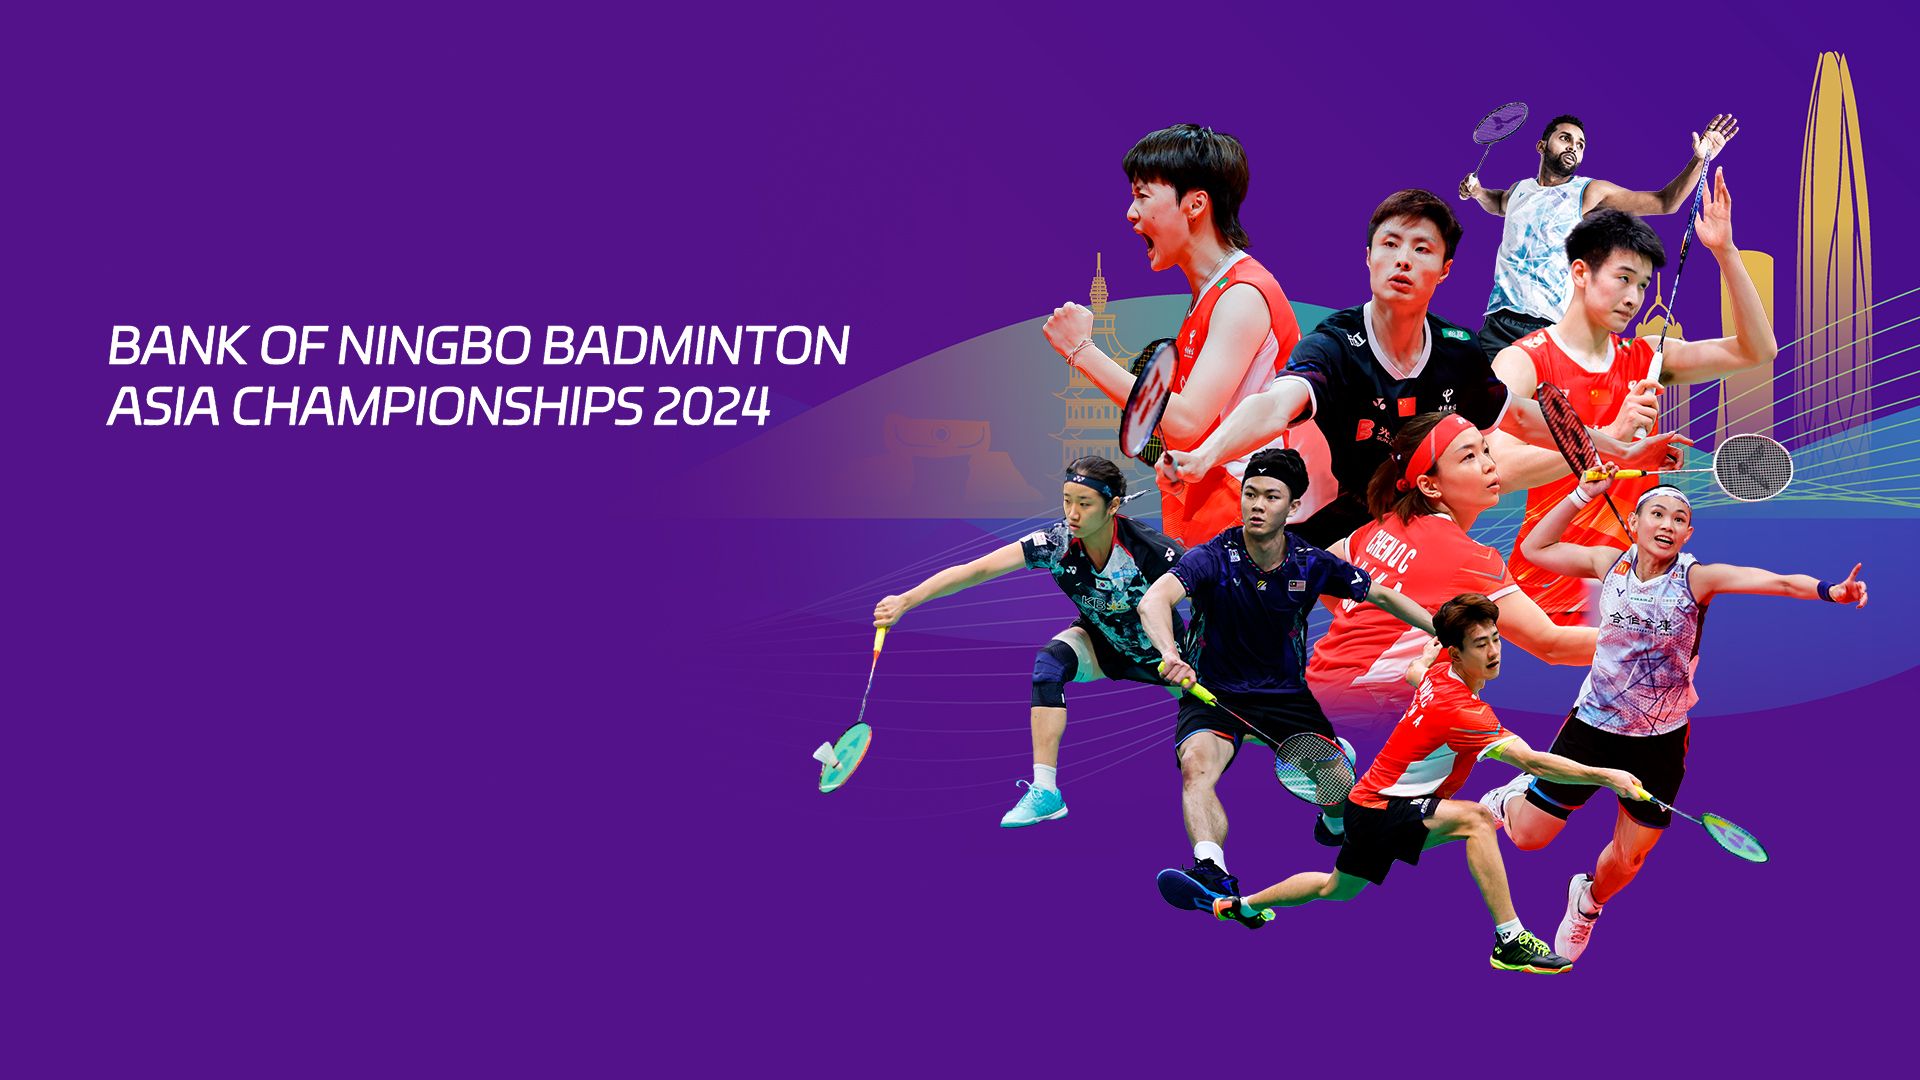 Bank of Ningbo Badminton Asia Championships 2024